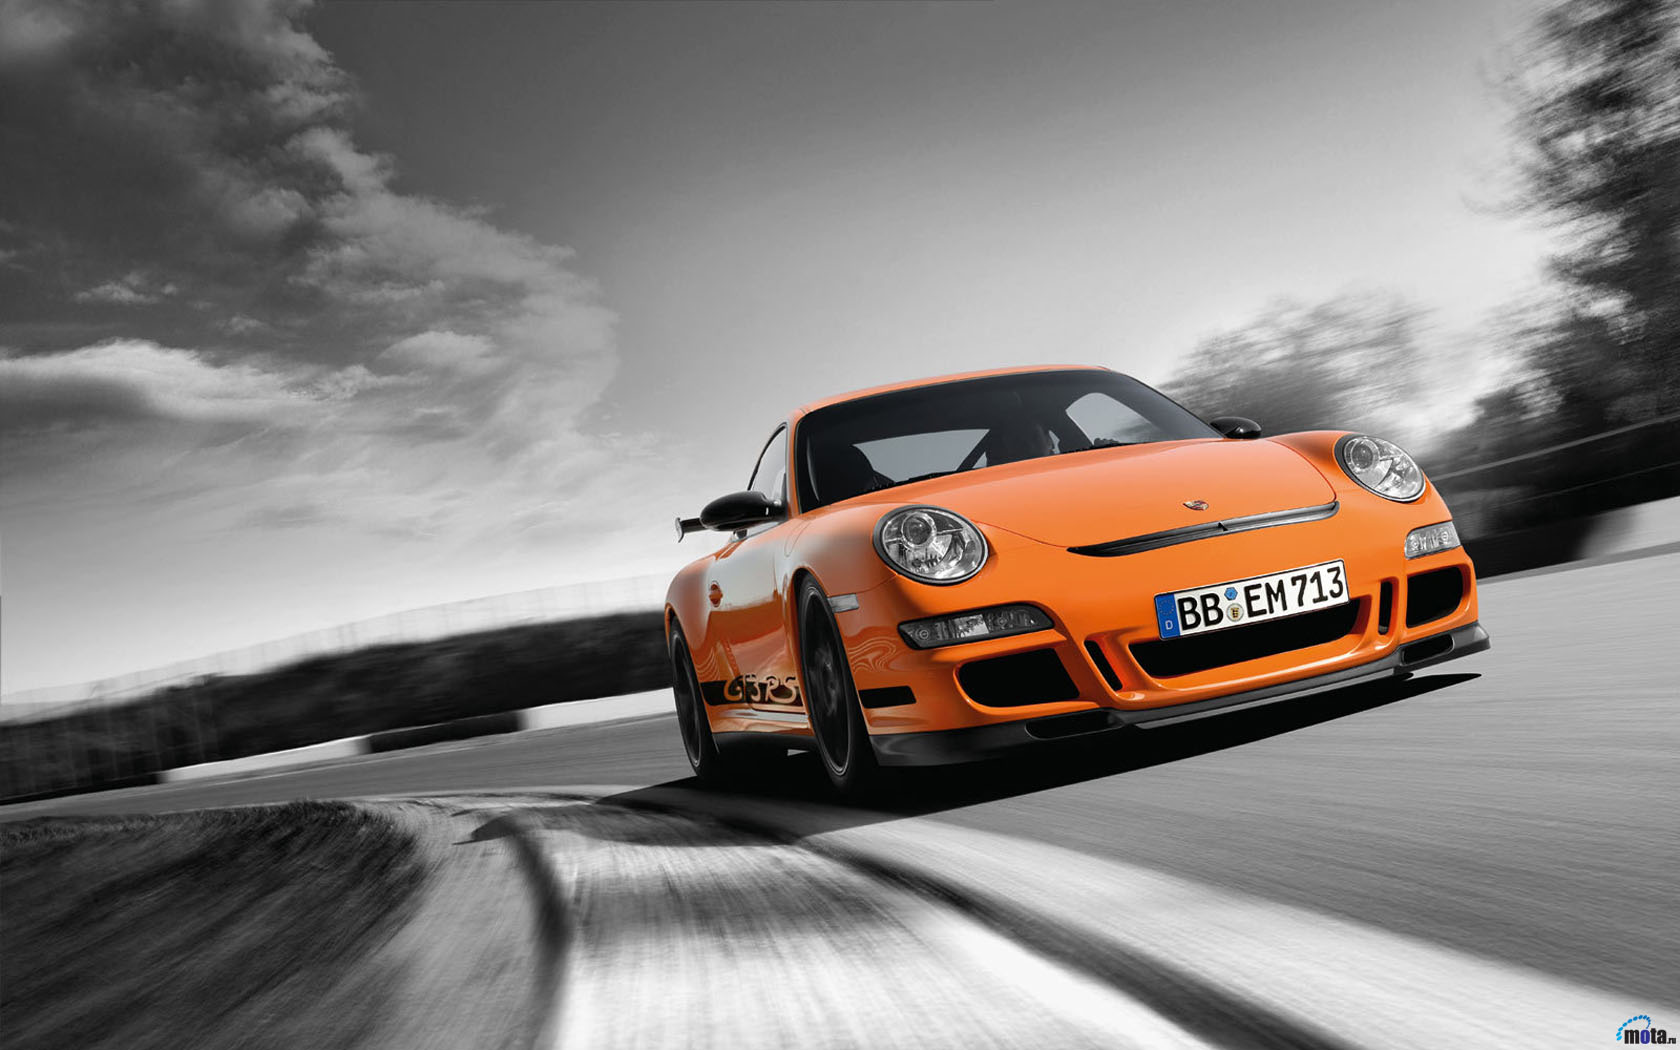 Wallpaper Download Porsche 911 Gt3 Rs - Porsche 911 Gt3 Rs Background Vertical , HD Wallpaper & Backgrounds